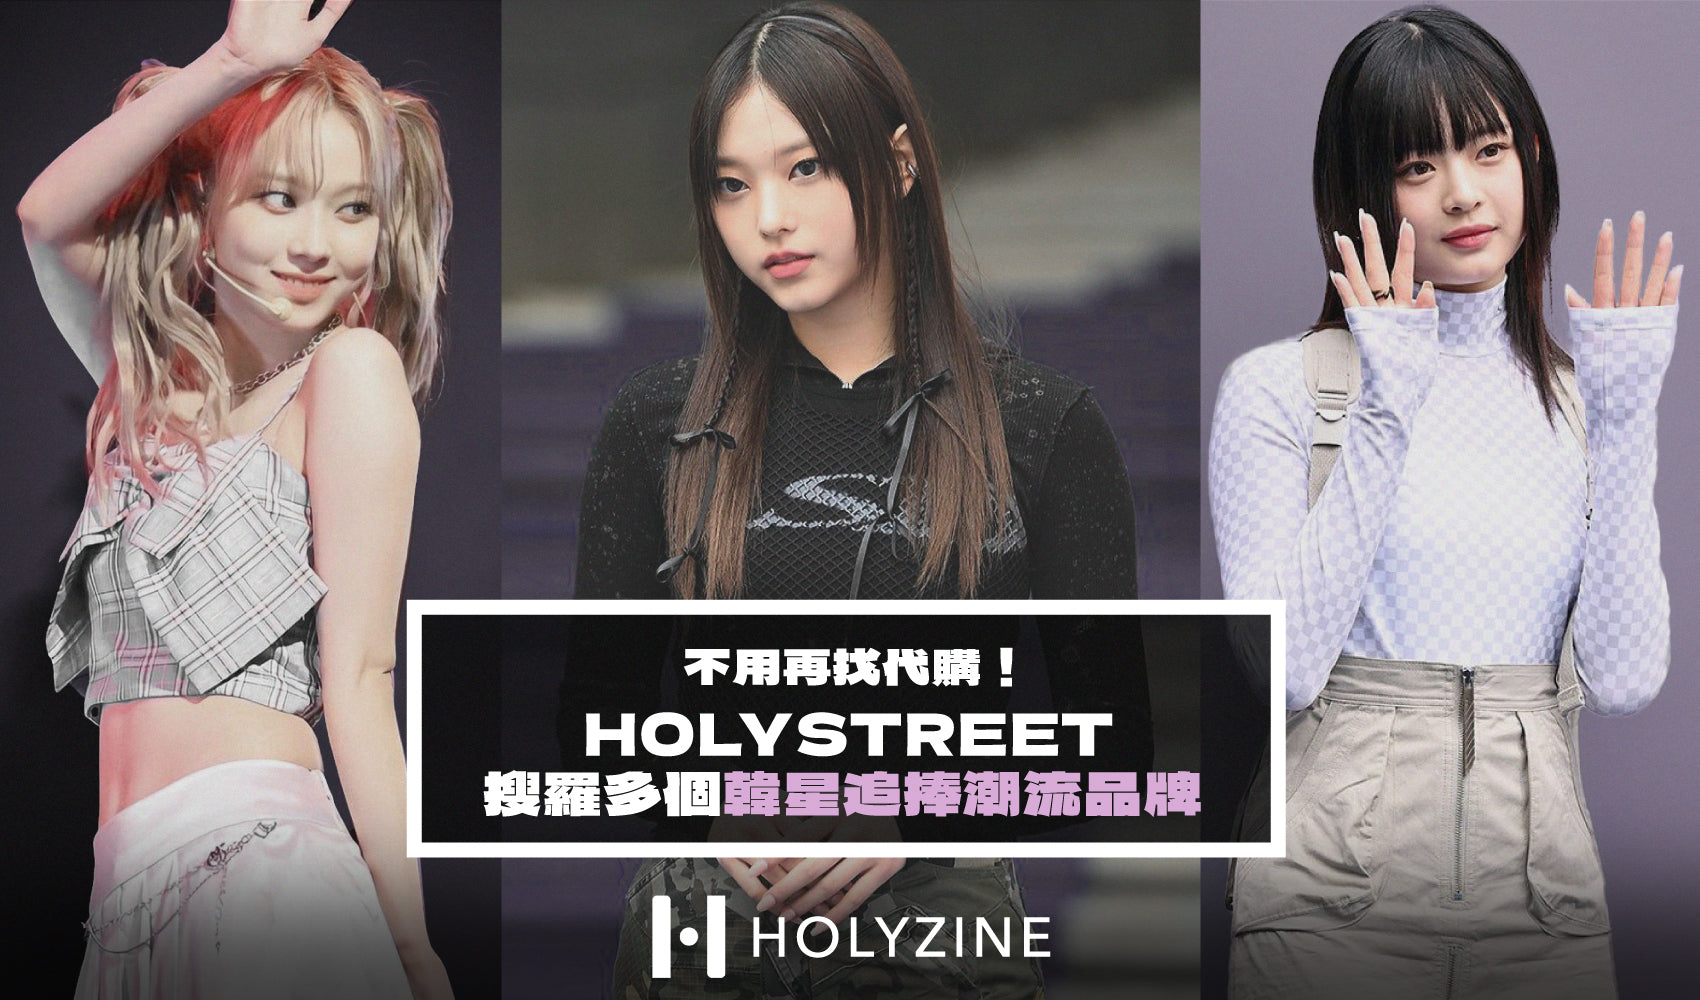 不用再找代購！ HOLYSTREET 搜羅多個韓星追捧潮流品牌